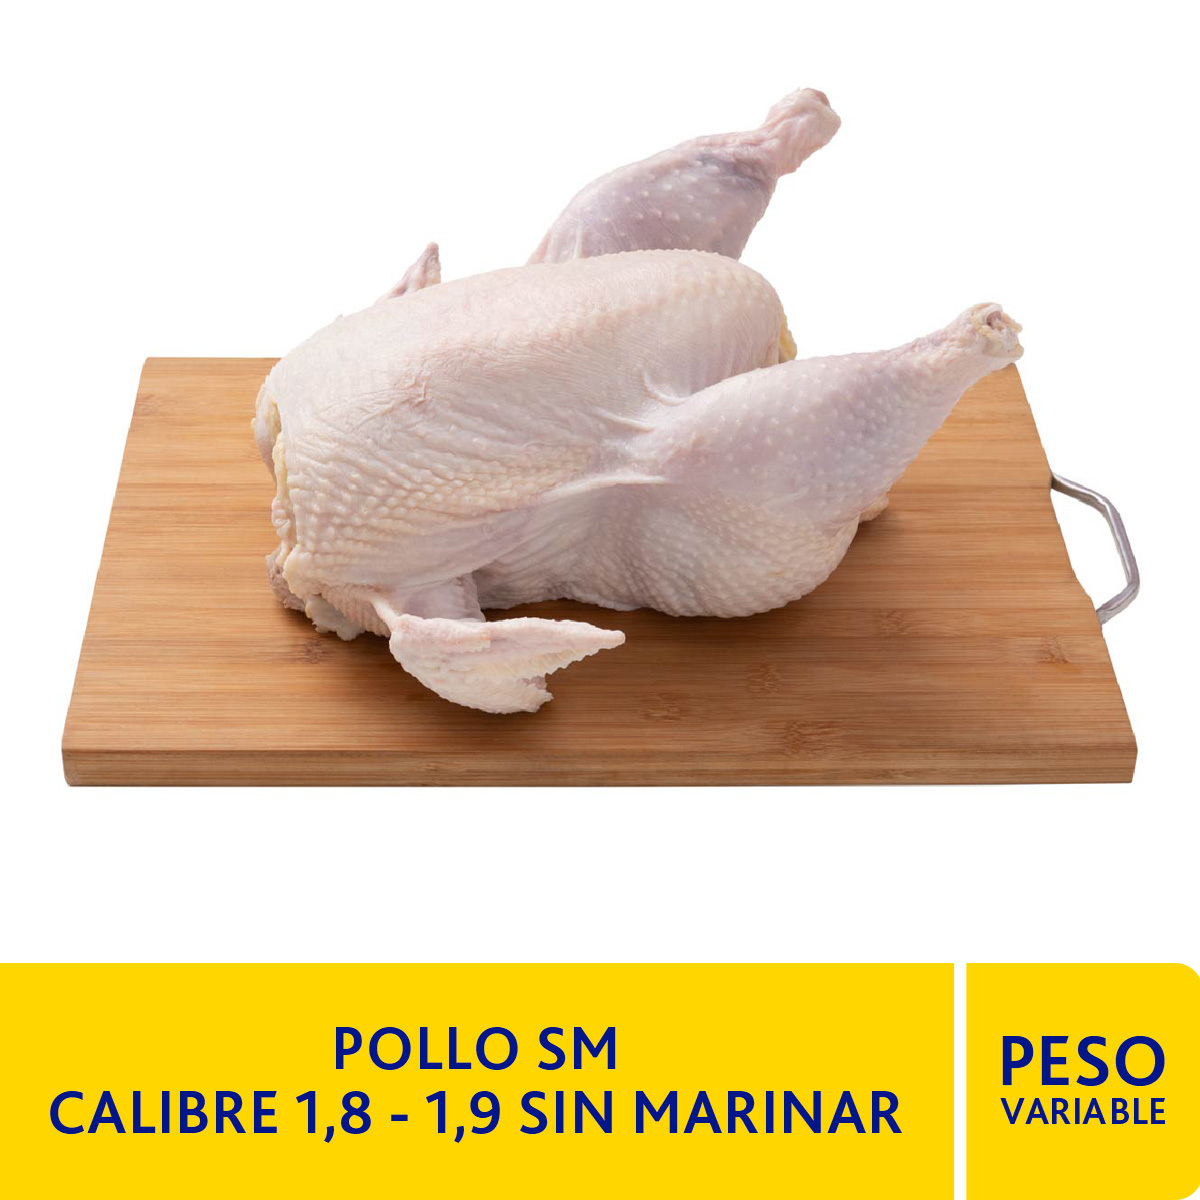 Pollo SM Calibre 1,8- 1,9 SIN MARINAR